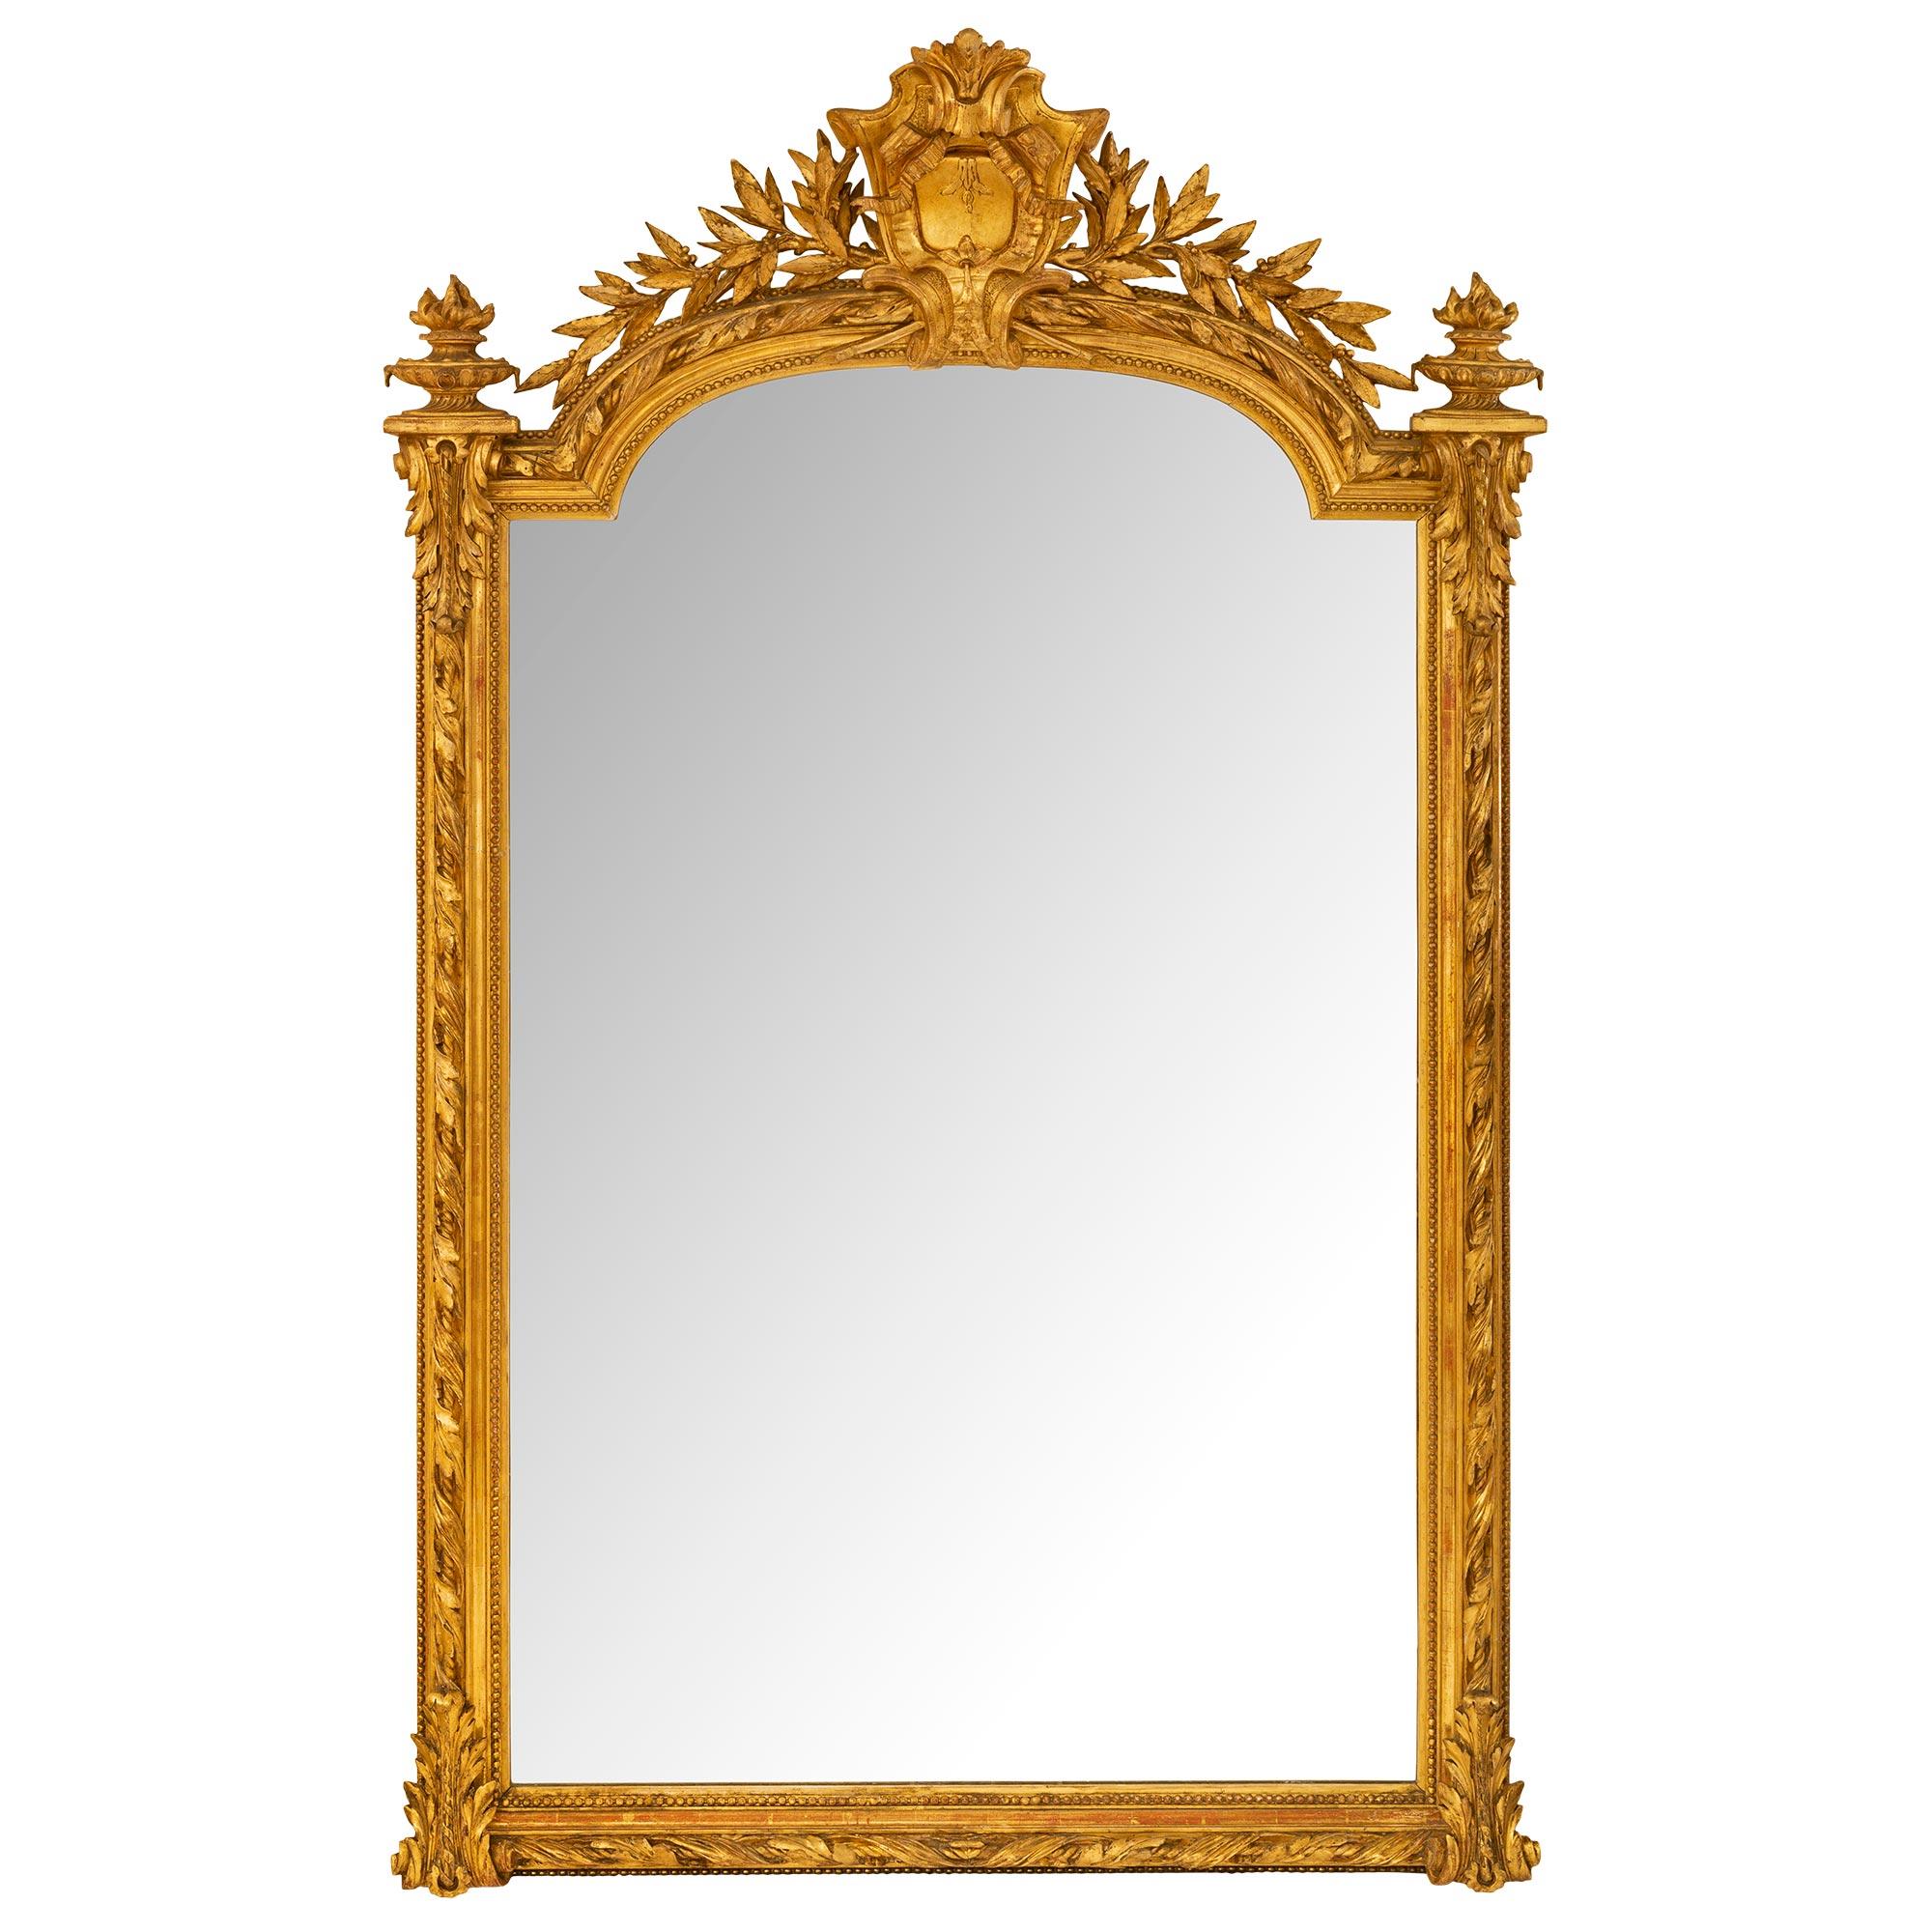 Eine sehr elegante Französisch 19. Jahrhundert Louis XVI st. Vergoldung Spiegel. Der Spiegel behält seine ursprüngliche Spiegelplatte innerhalb einer schönen fein geschnitzten Wrap-around Perlen gesprenkelt Grenze gesetzt. Ein charmantes, reich